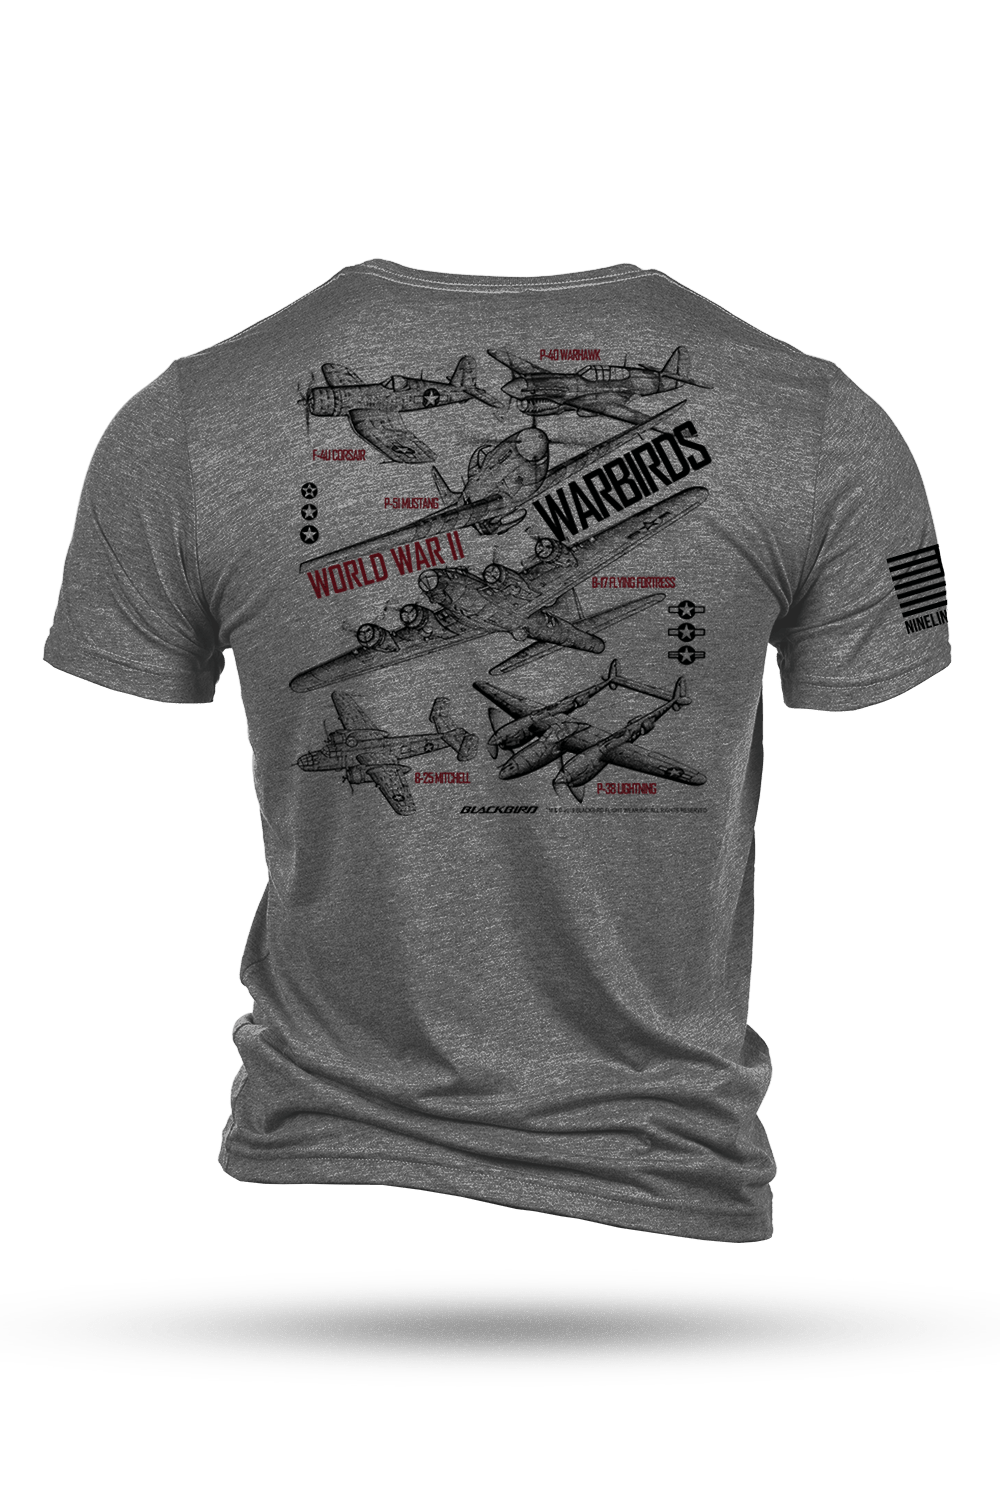 T - Shirt - Blackbird - WW2 WARBIRDS #1